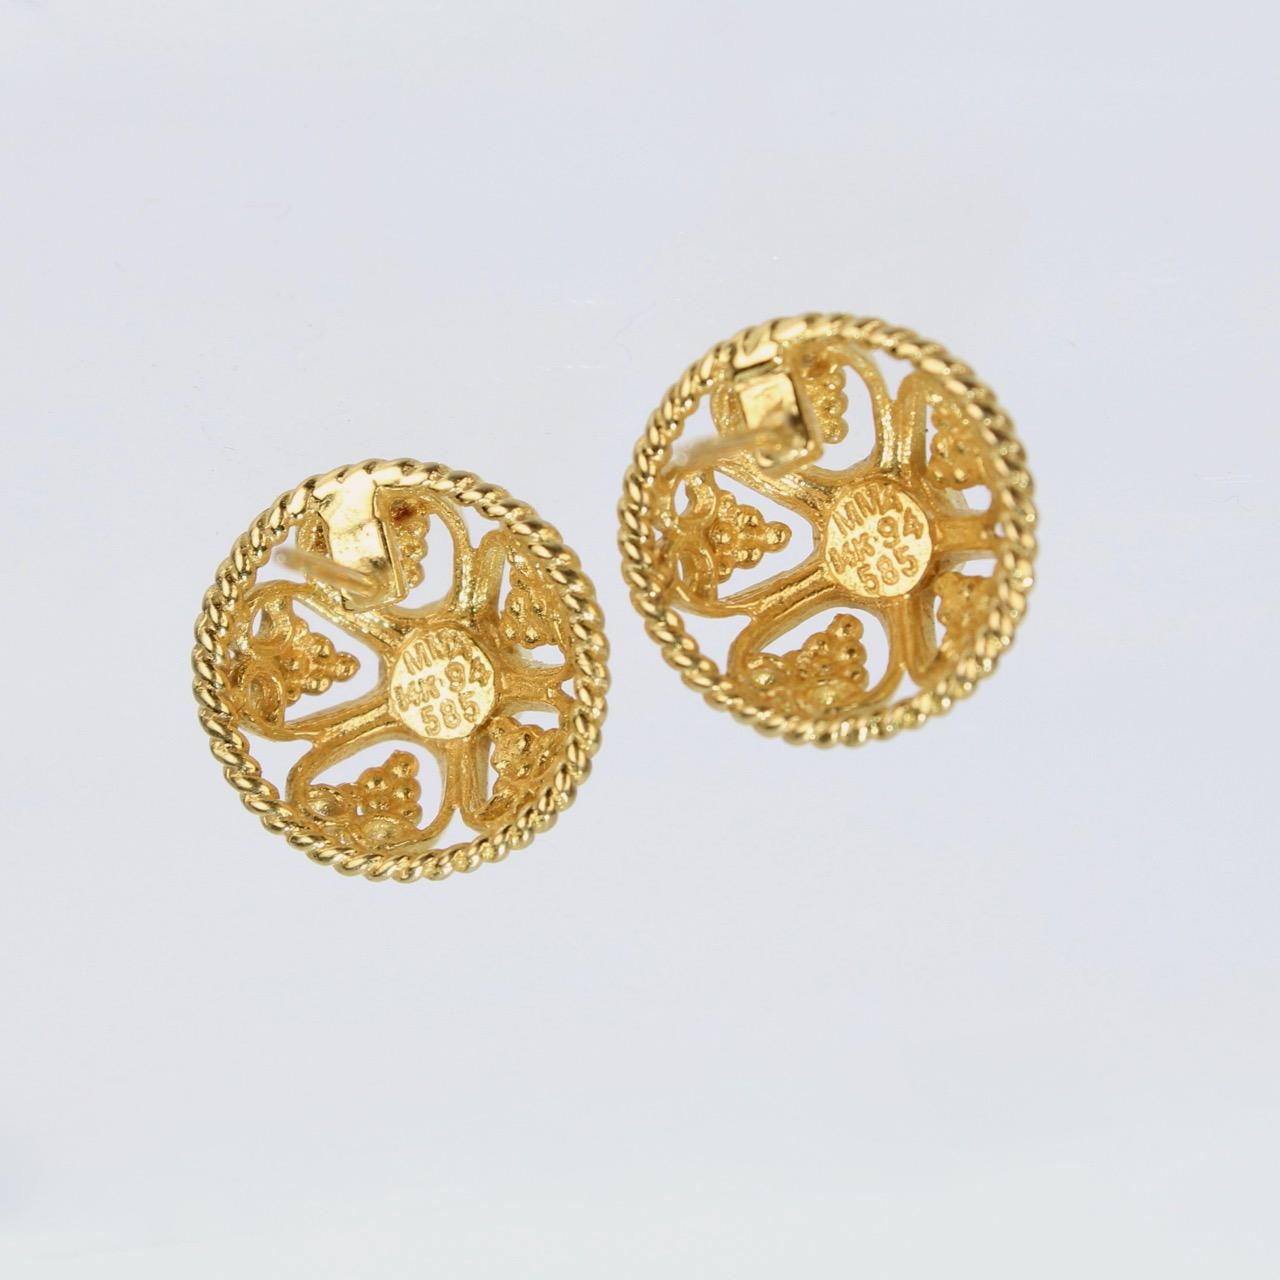 Women's Metropolitan Museum of Art MMA 14 Karat Gold & Garnet Renaissance Style Earrings For Sale